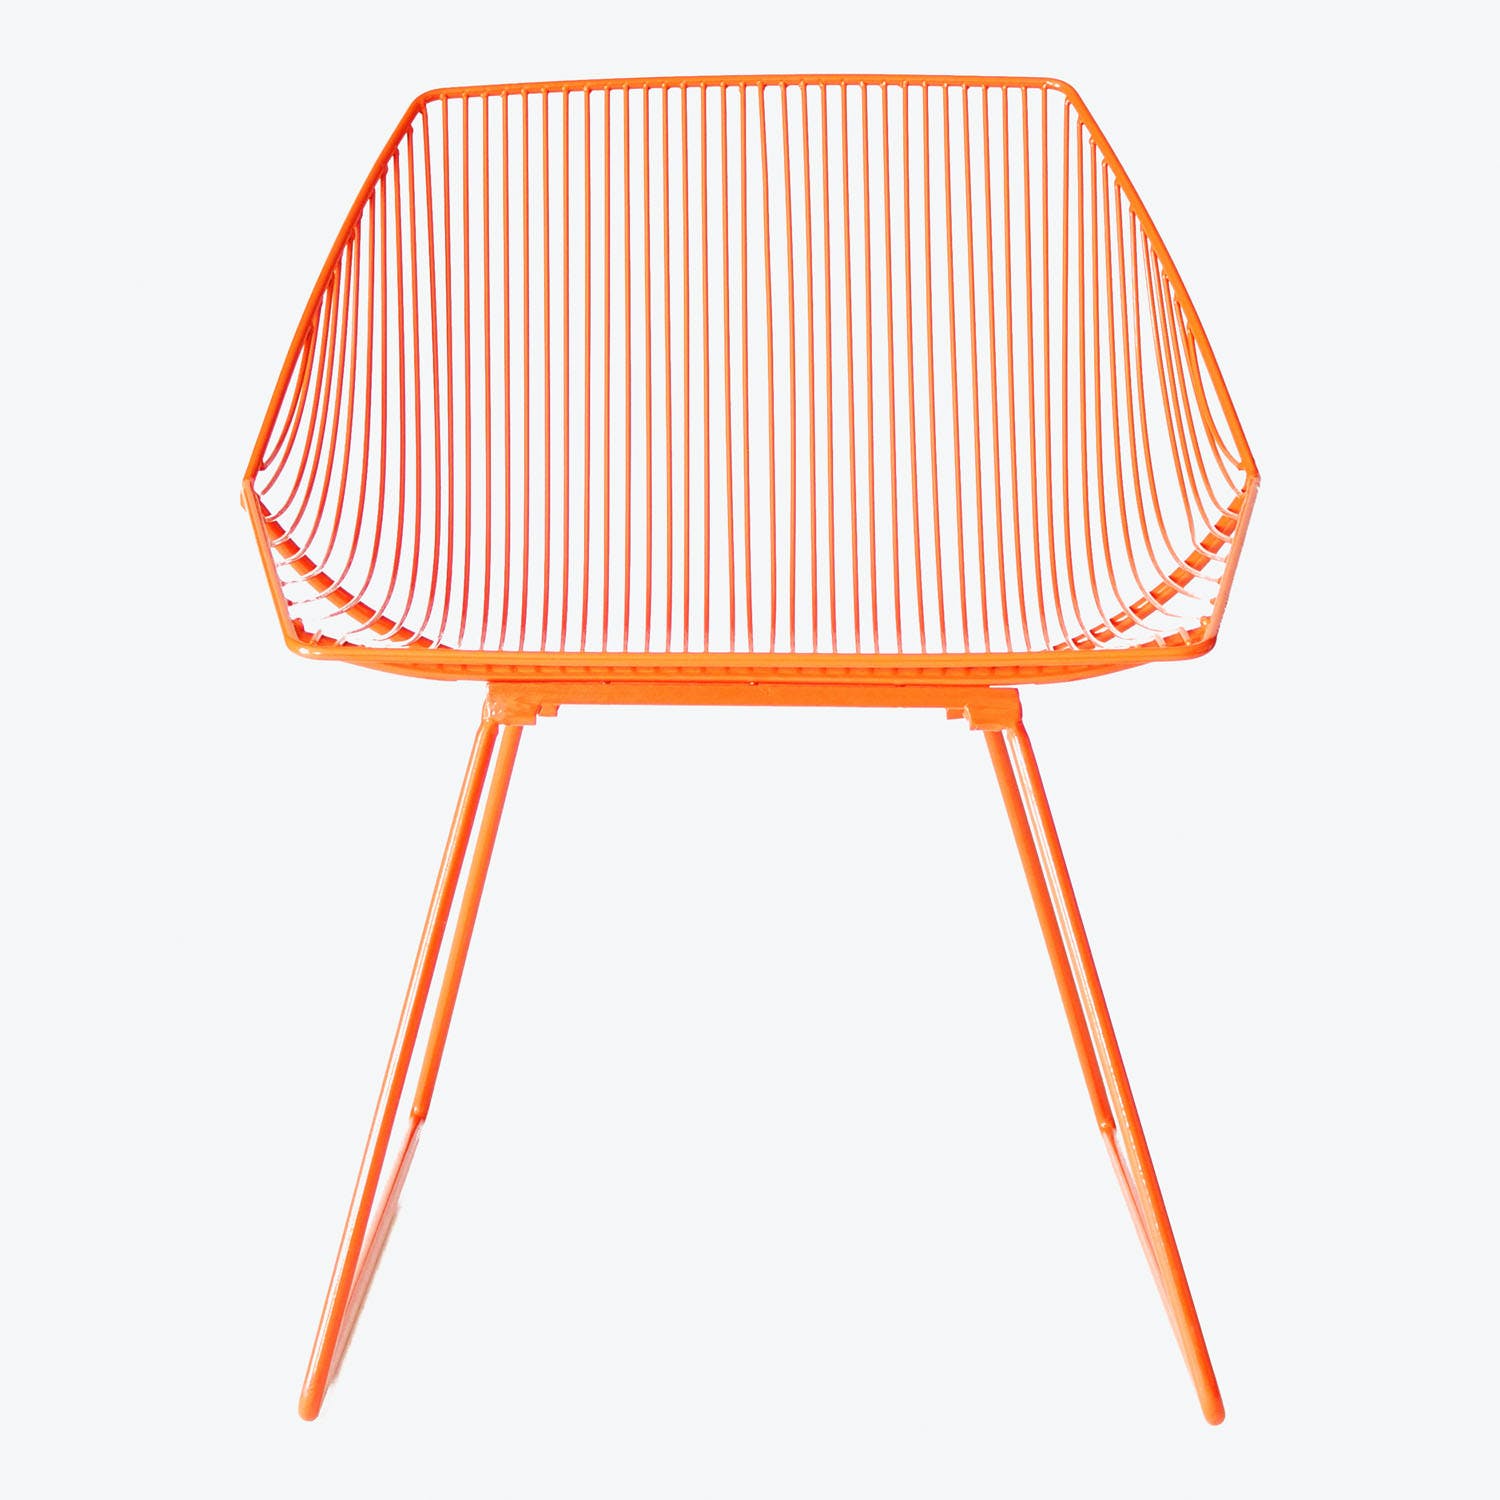 Modern, minimalist orange chair with open, sleek design and lightweight silhouette.